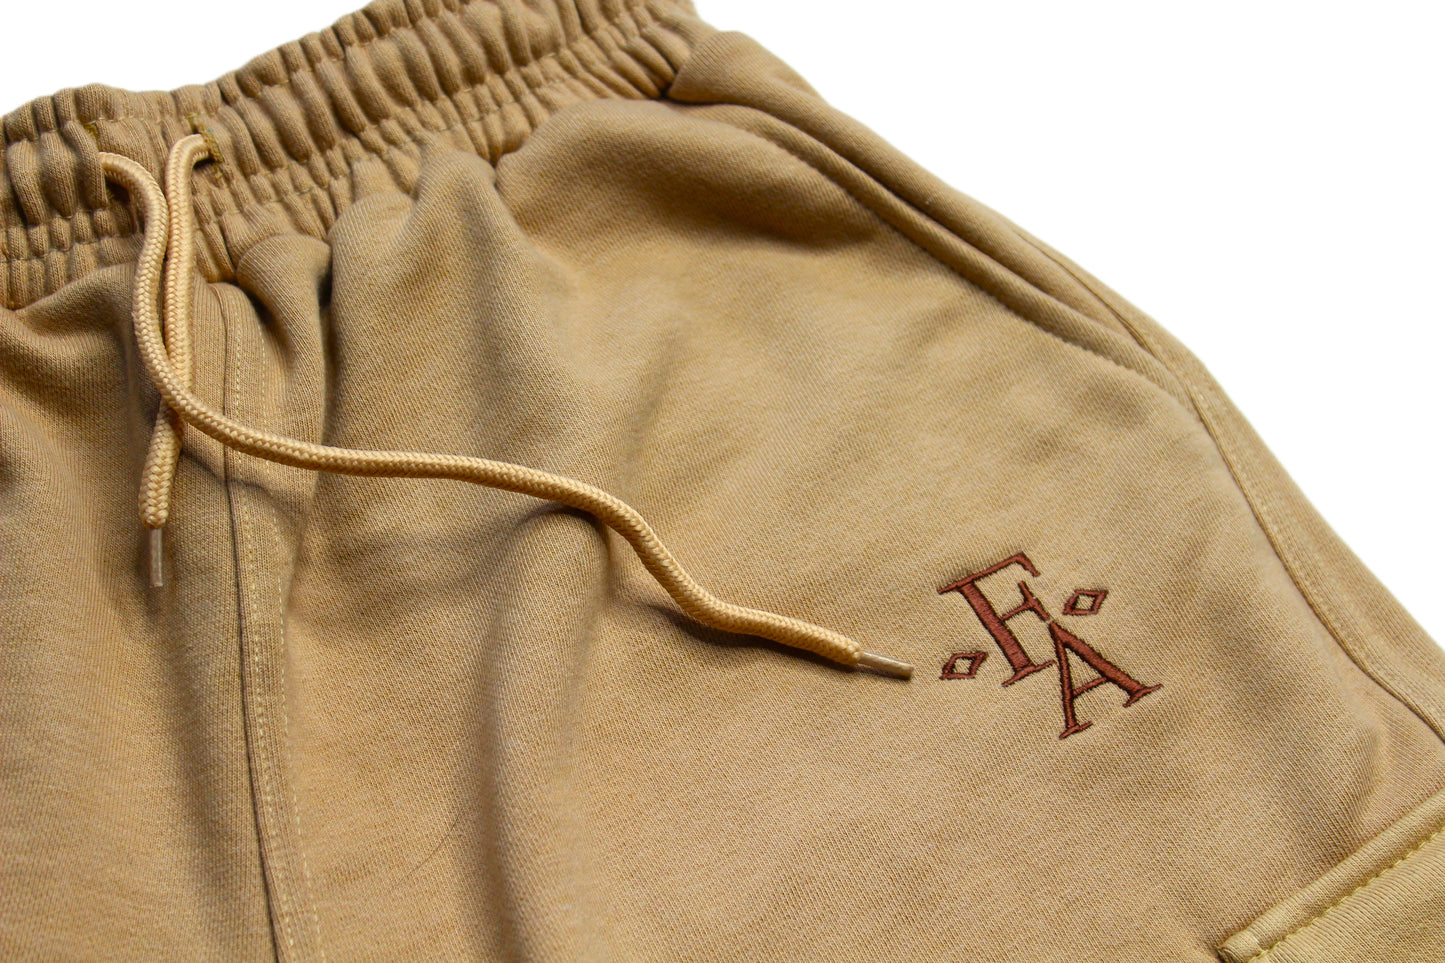 Tan Cotton Fleece Embroidered Cargo Shorts